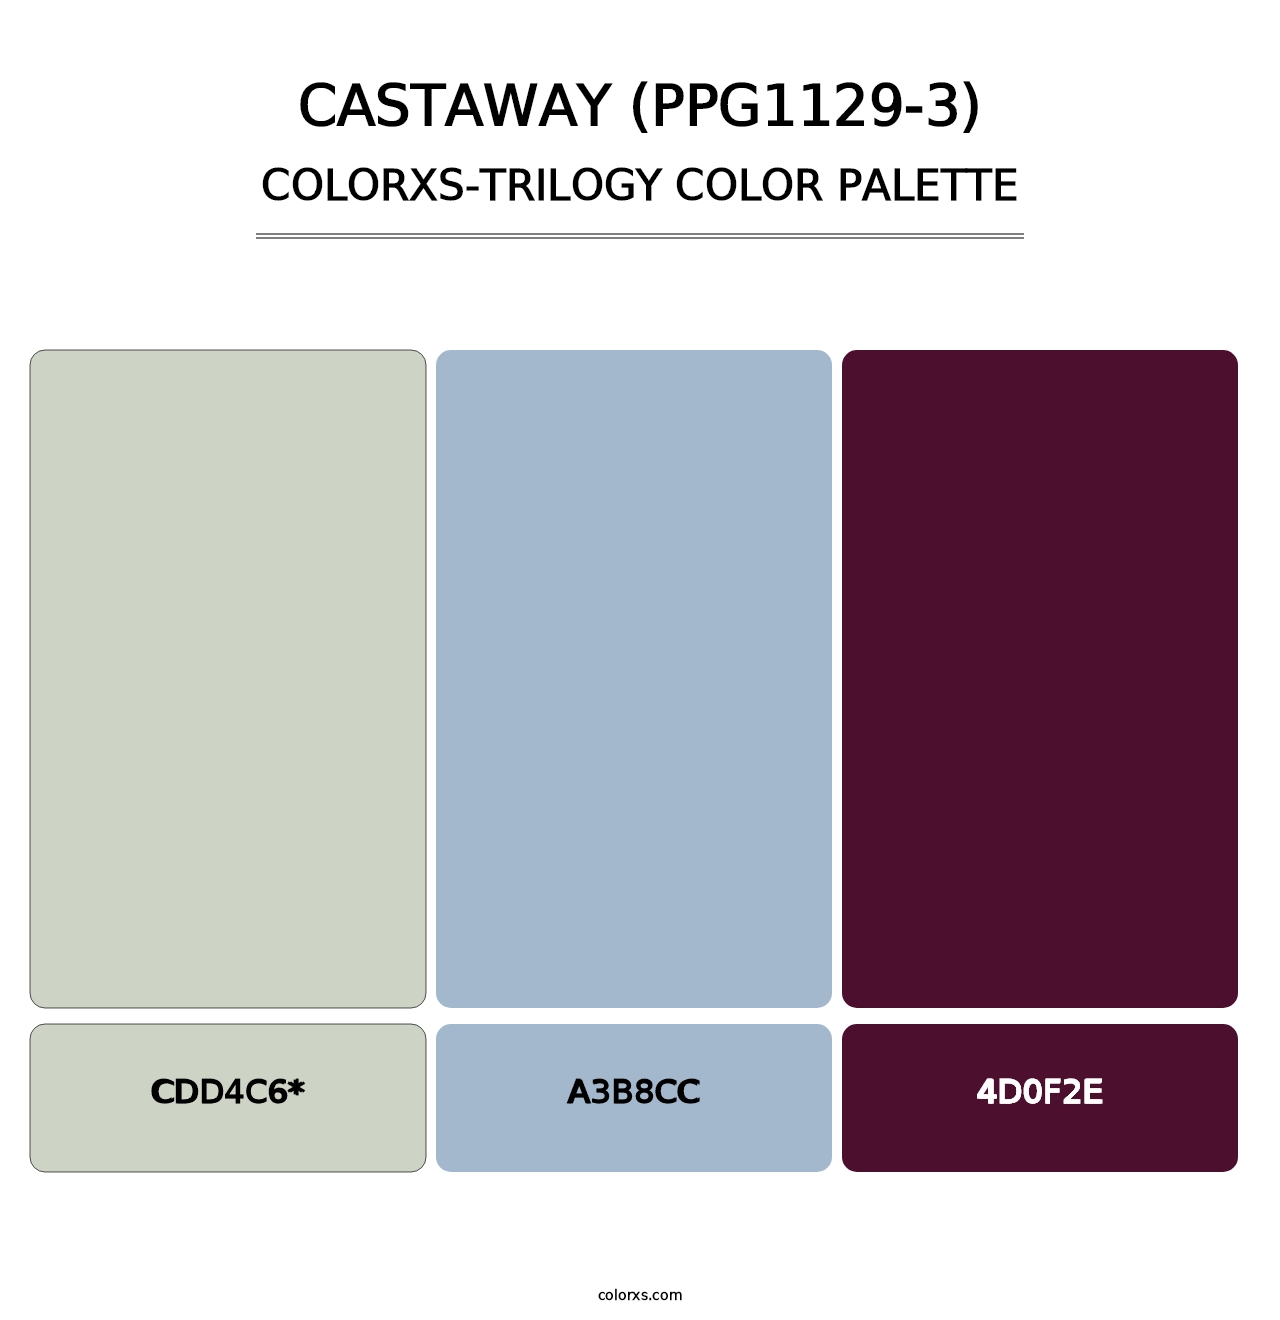 Castaway (PPG1129-3) - Colorxs Trilogy Palette